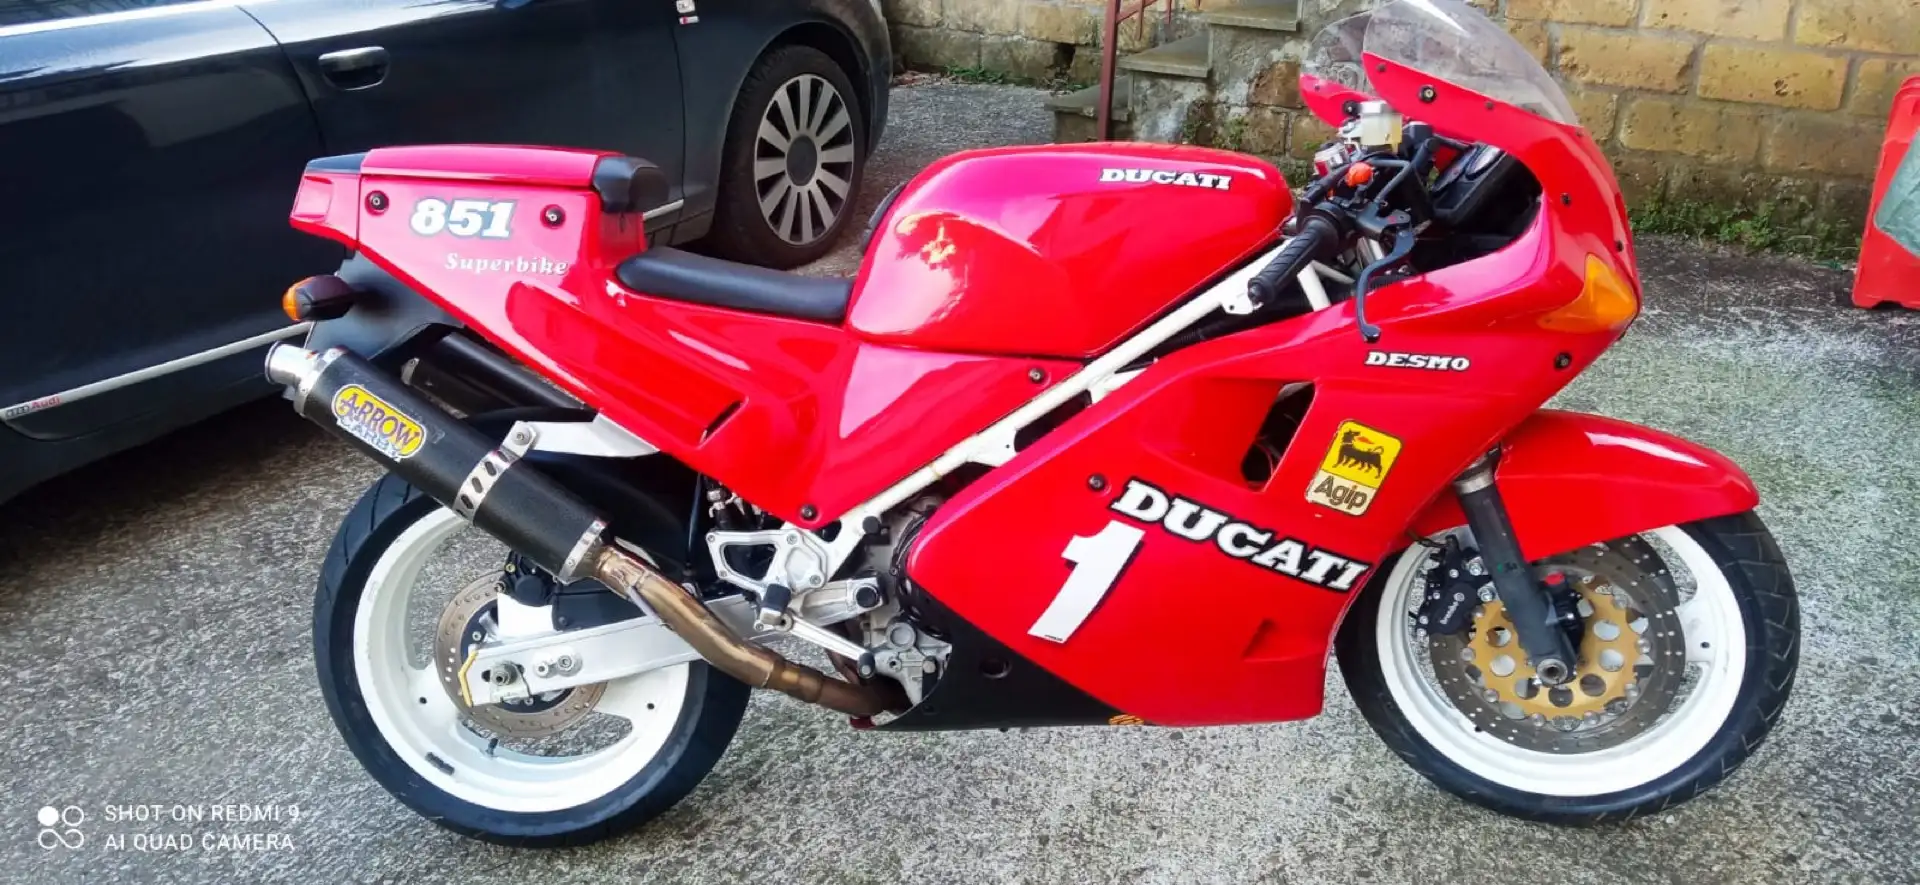 Ducati 851 superbike Czerwony - 2